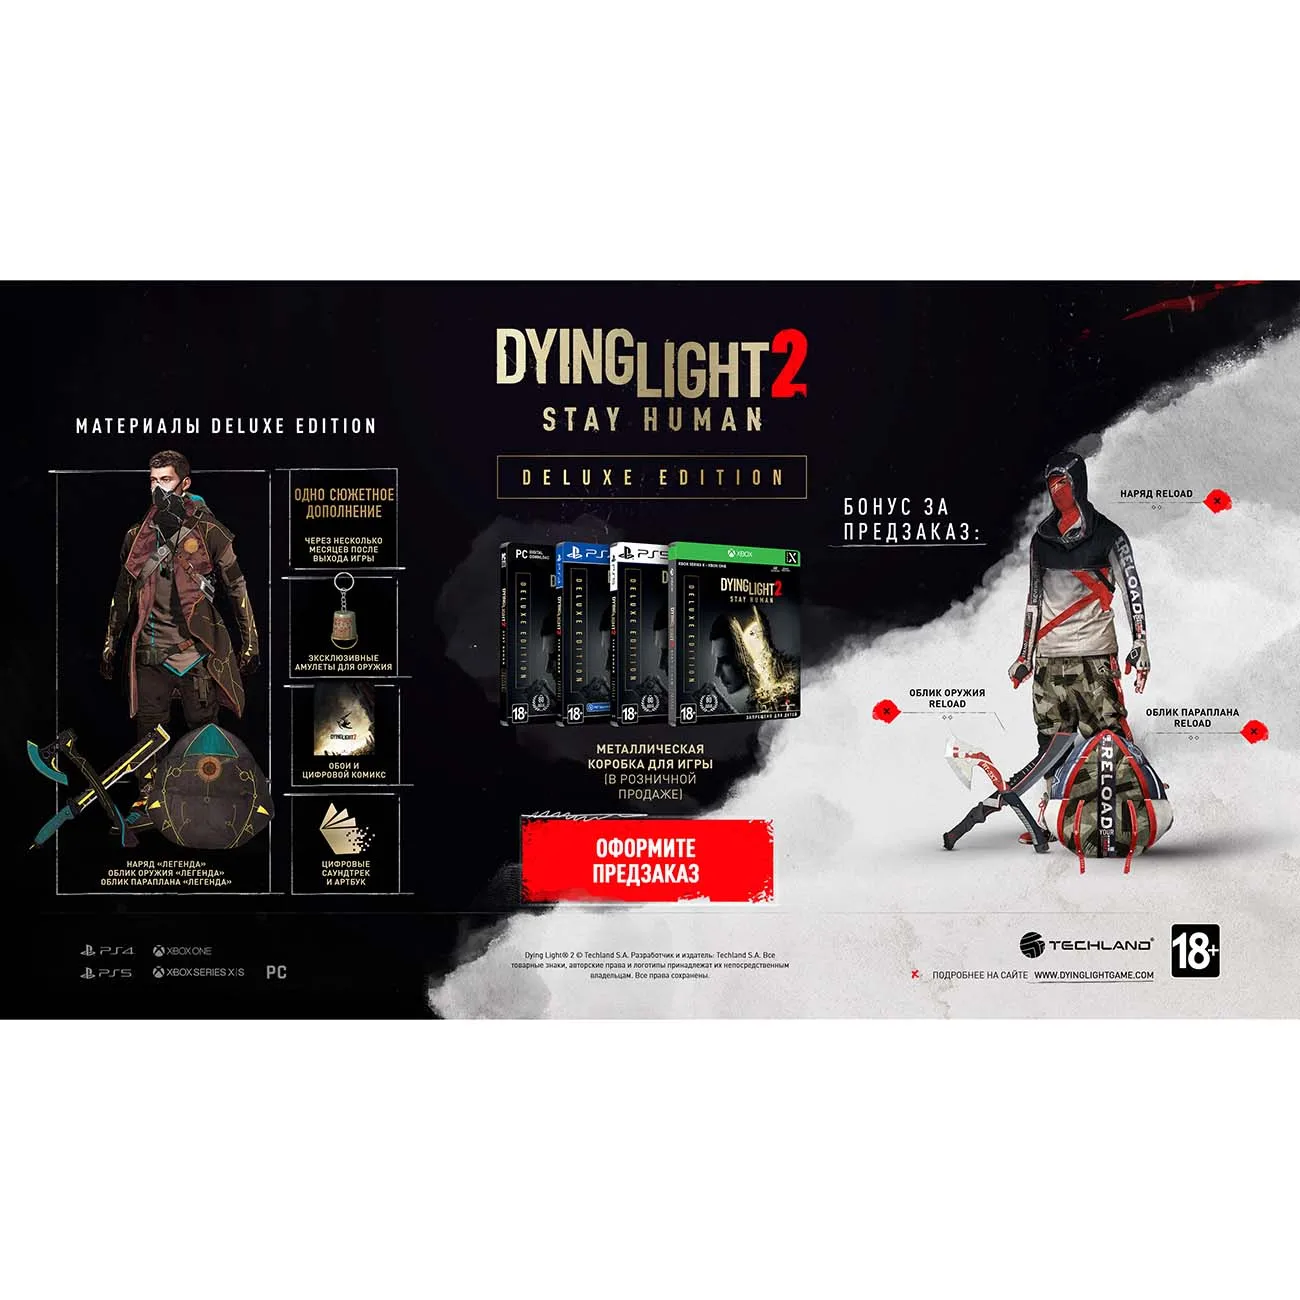 Коллекционное издание Dying Light 2 ящик. Dying Light 2 stay Human коллекционное издание. Коллекционное издание Dying Light 2 ps4. Stay human отзывы